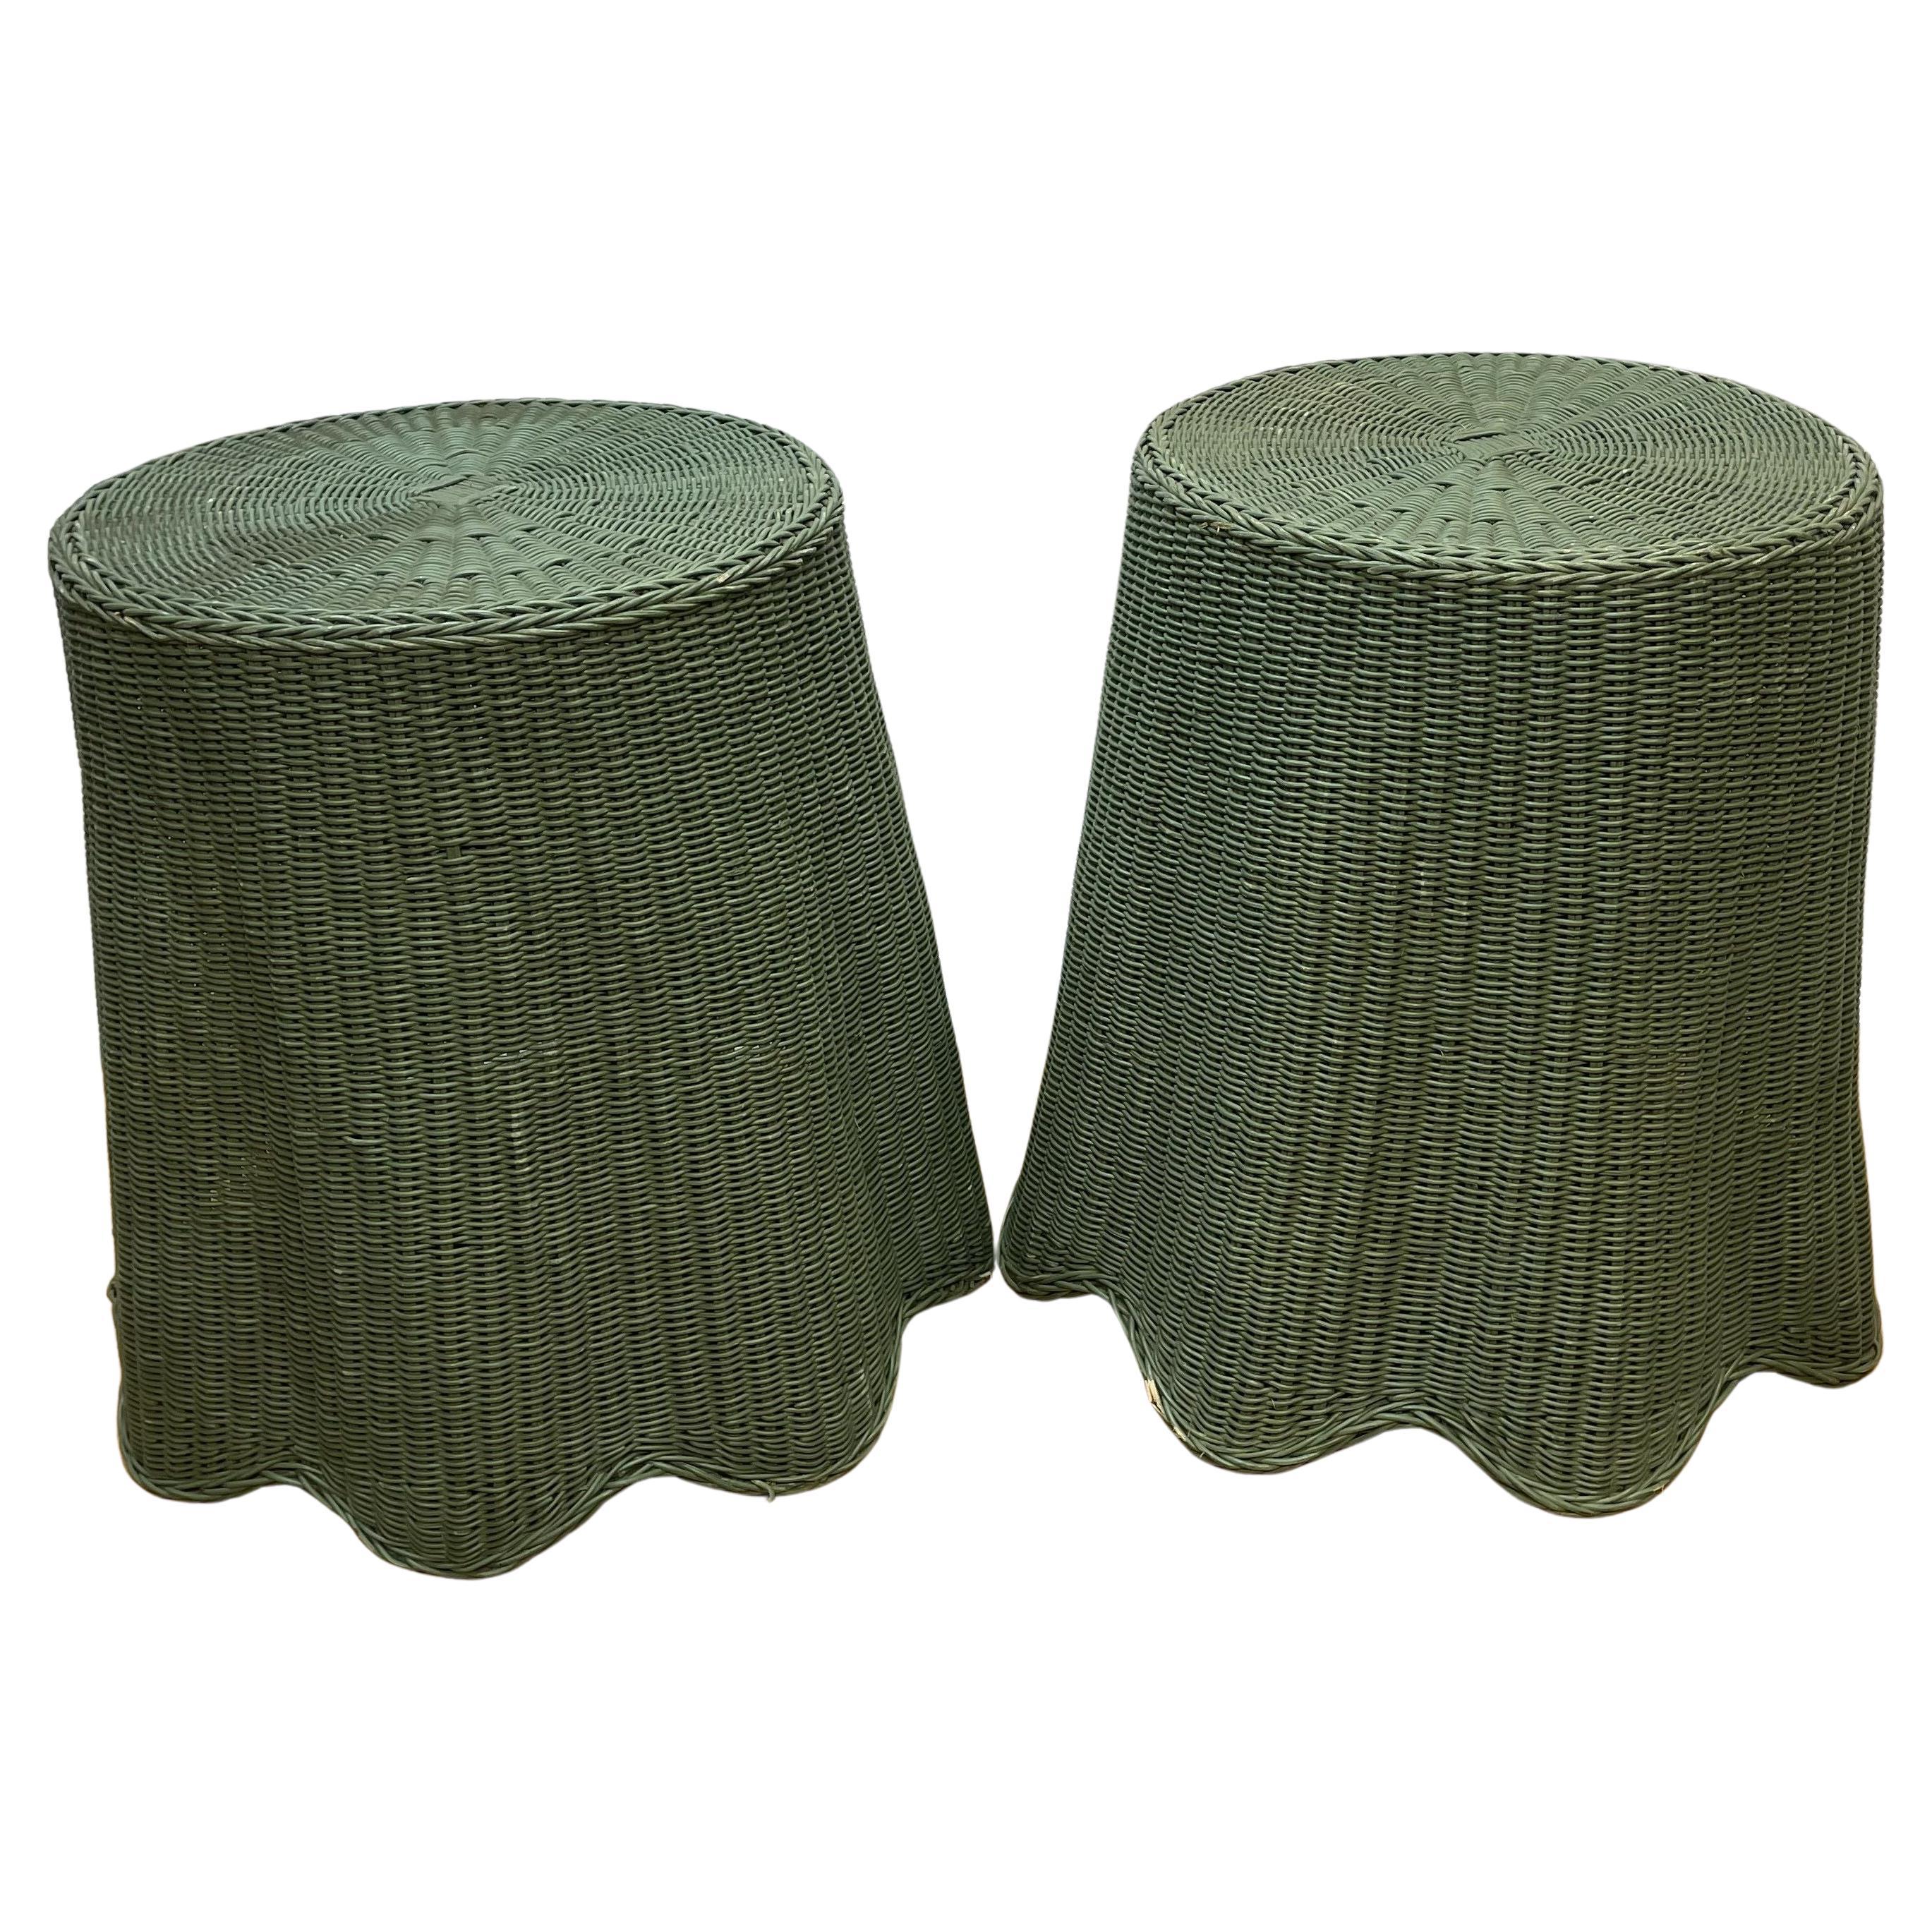 Paar Tromp L'oeil-Tische aus drapiertem Korbgeflecht, grün lackiert 